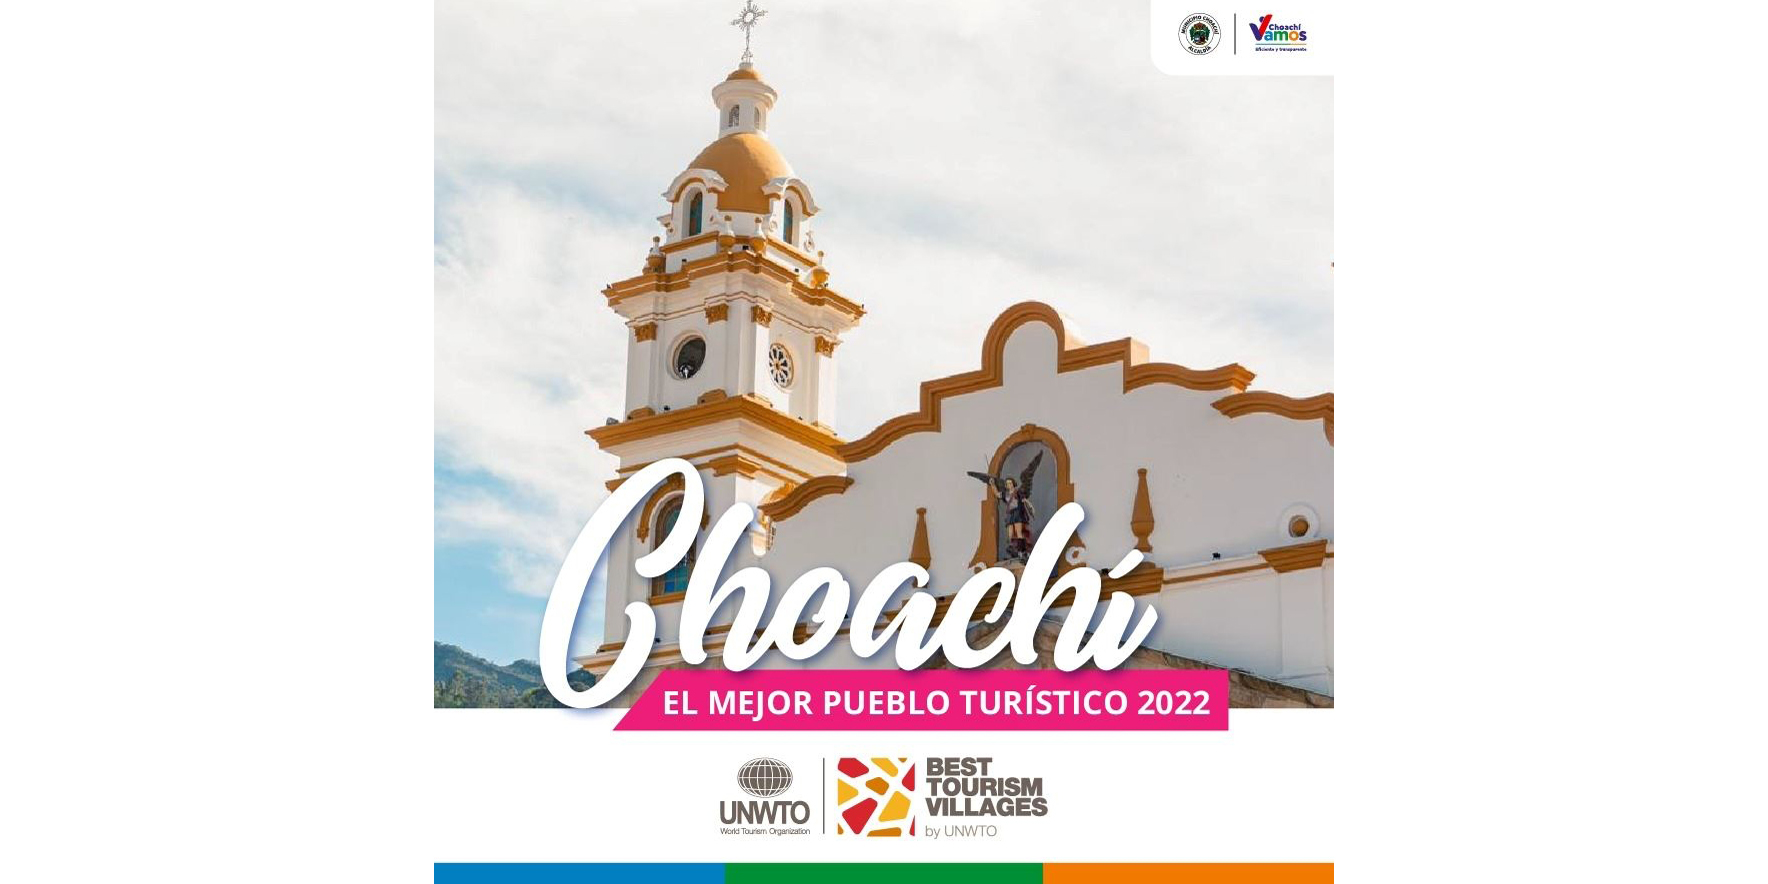 ¿Sabes por qué Choachí es uno de los mejores pueblos para el turismo, según OMT?

